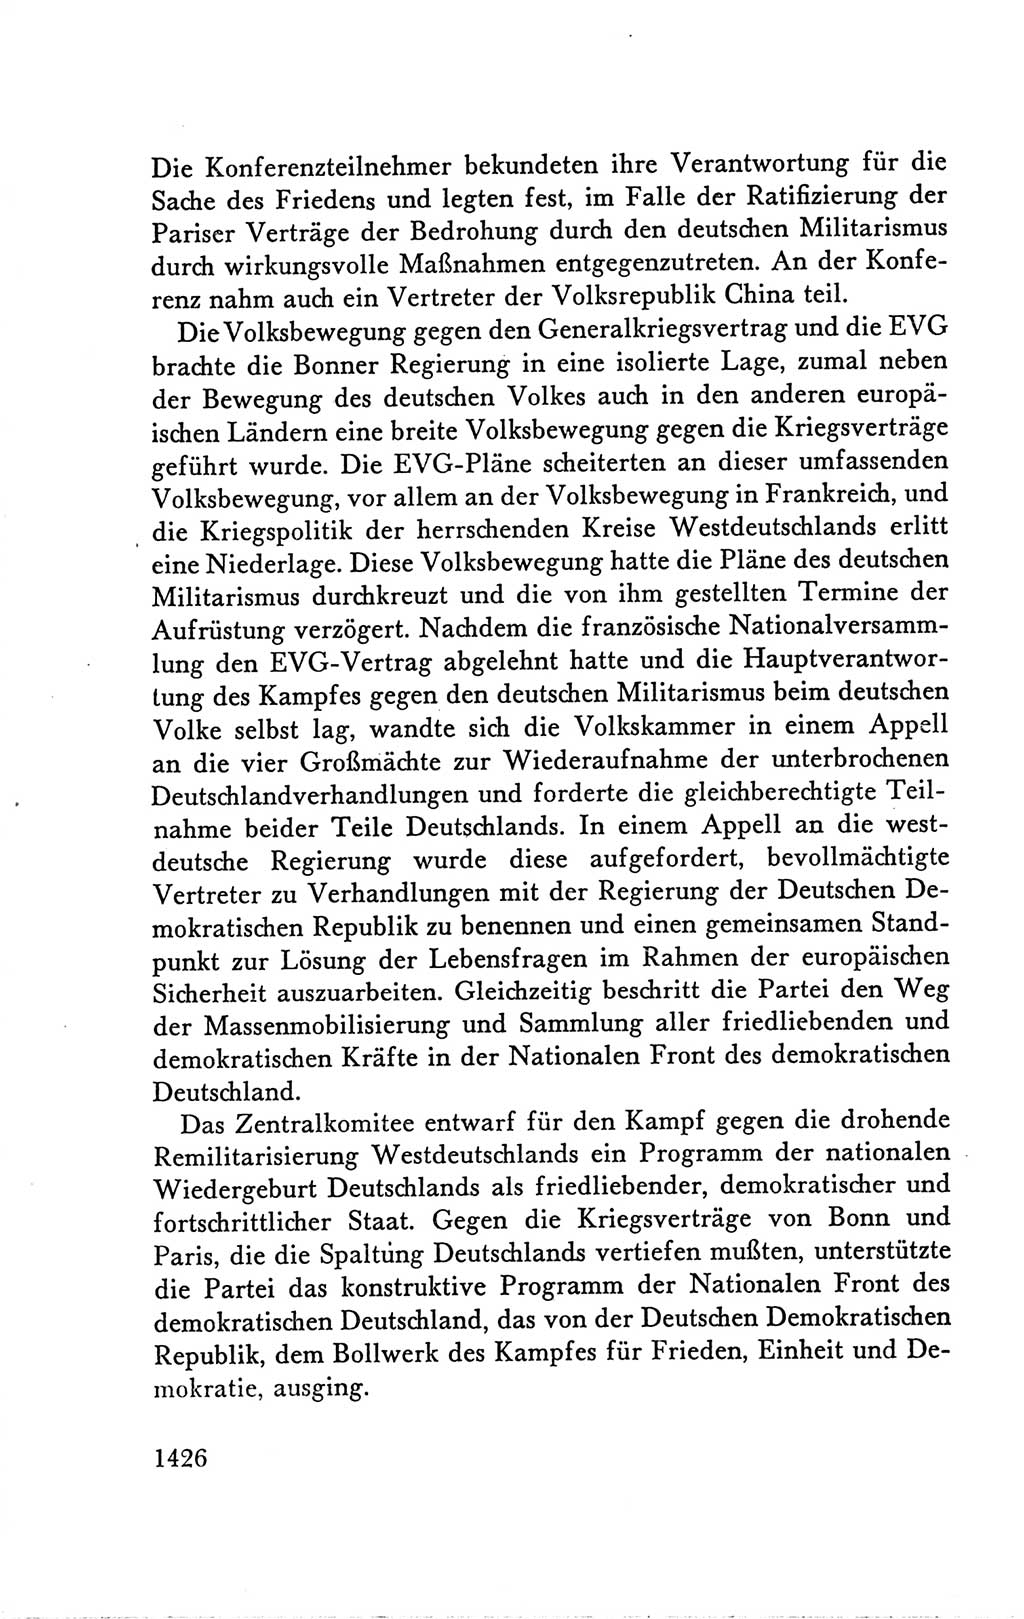 Protokoll der Verhandlungen des Ⅴ. Parteitages der Sozialistischen Einheitspartei Deutschlands (SED) [Deutsche Demokratische Republik (DDR)] 1958, Seite 1426